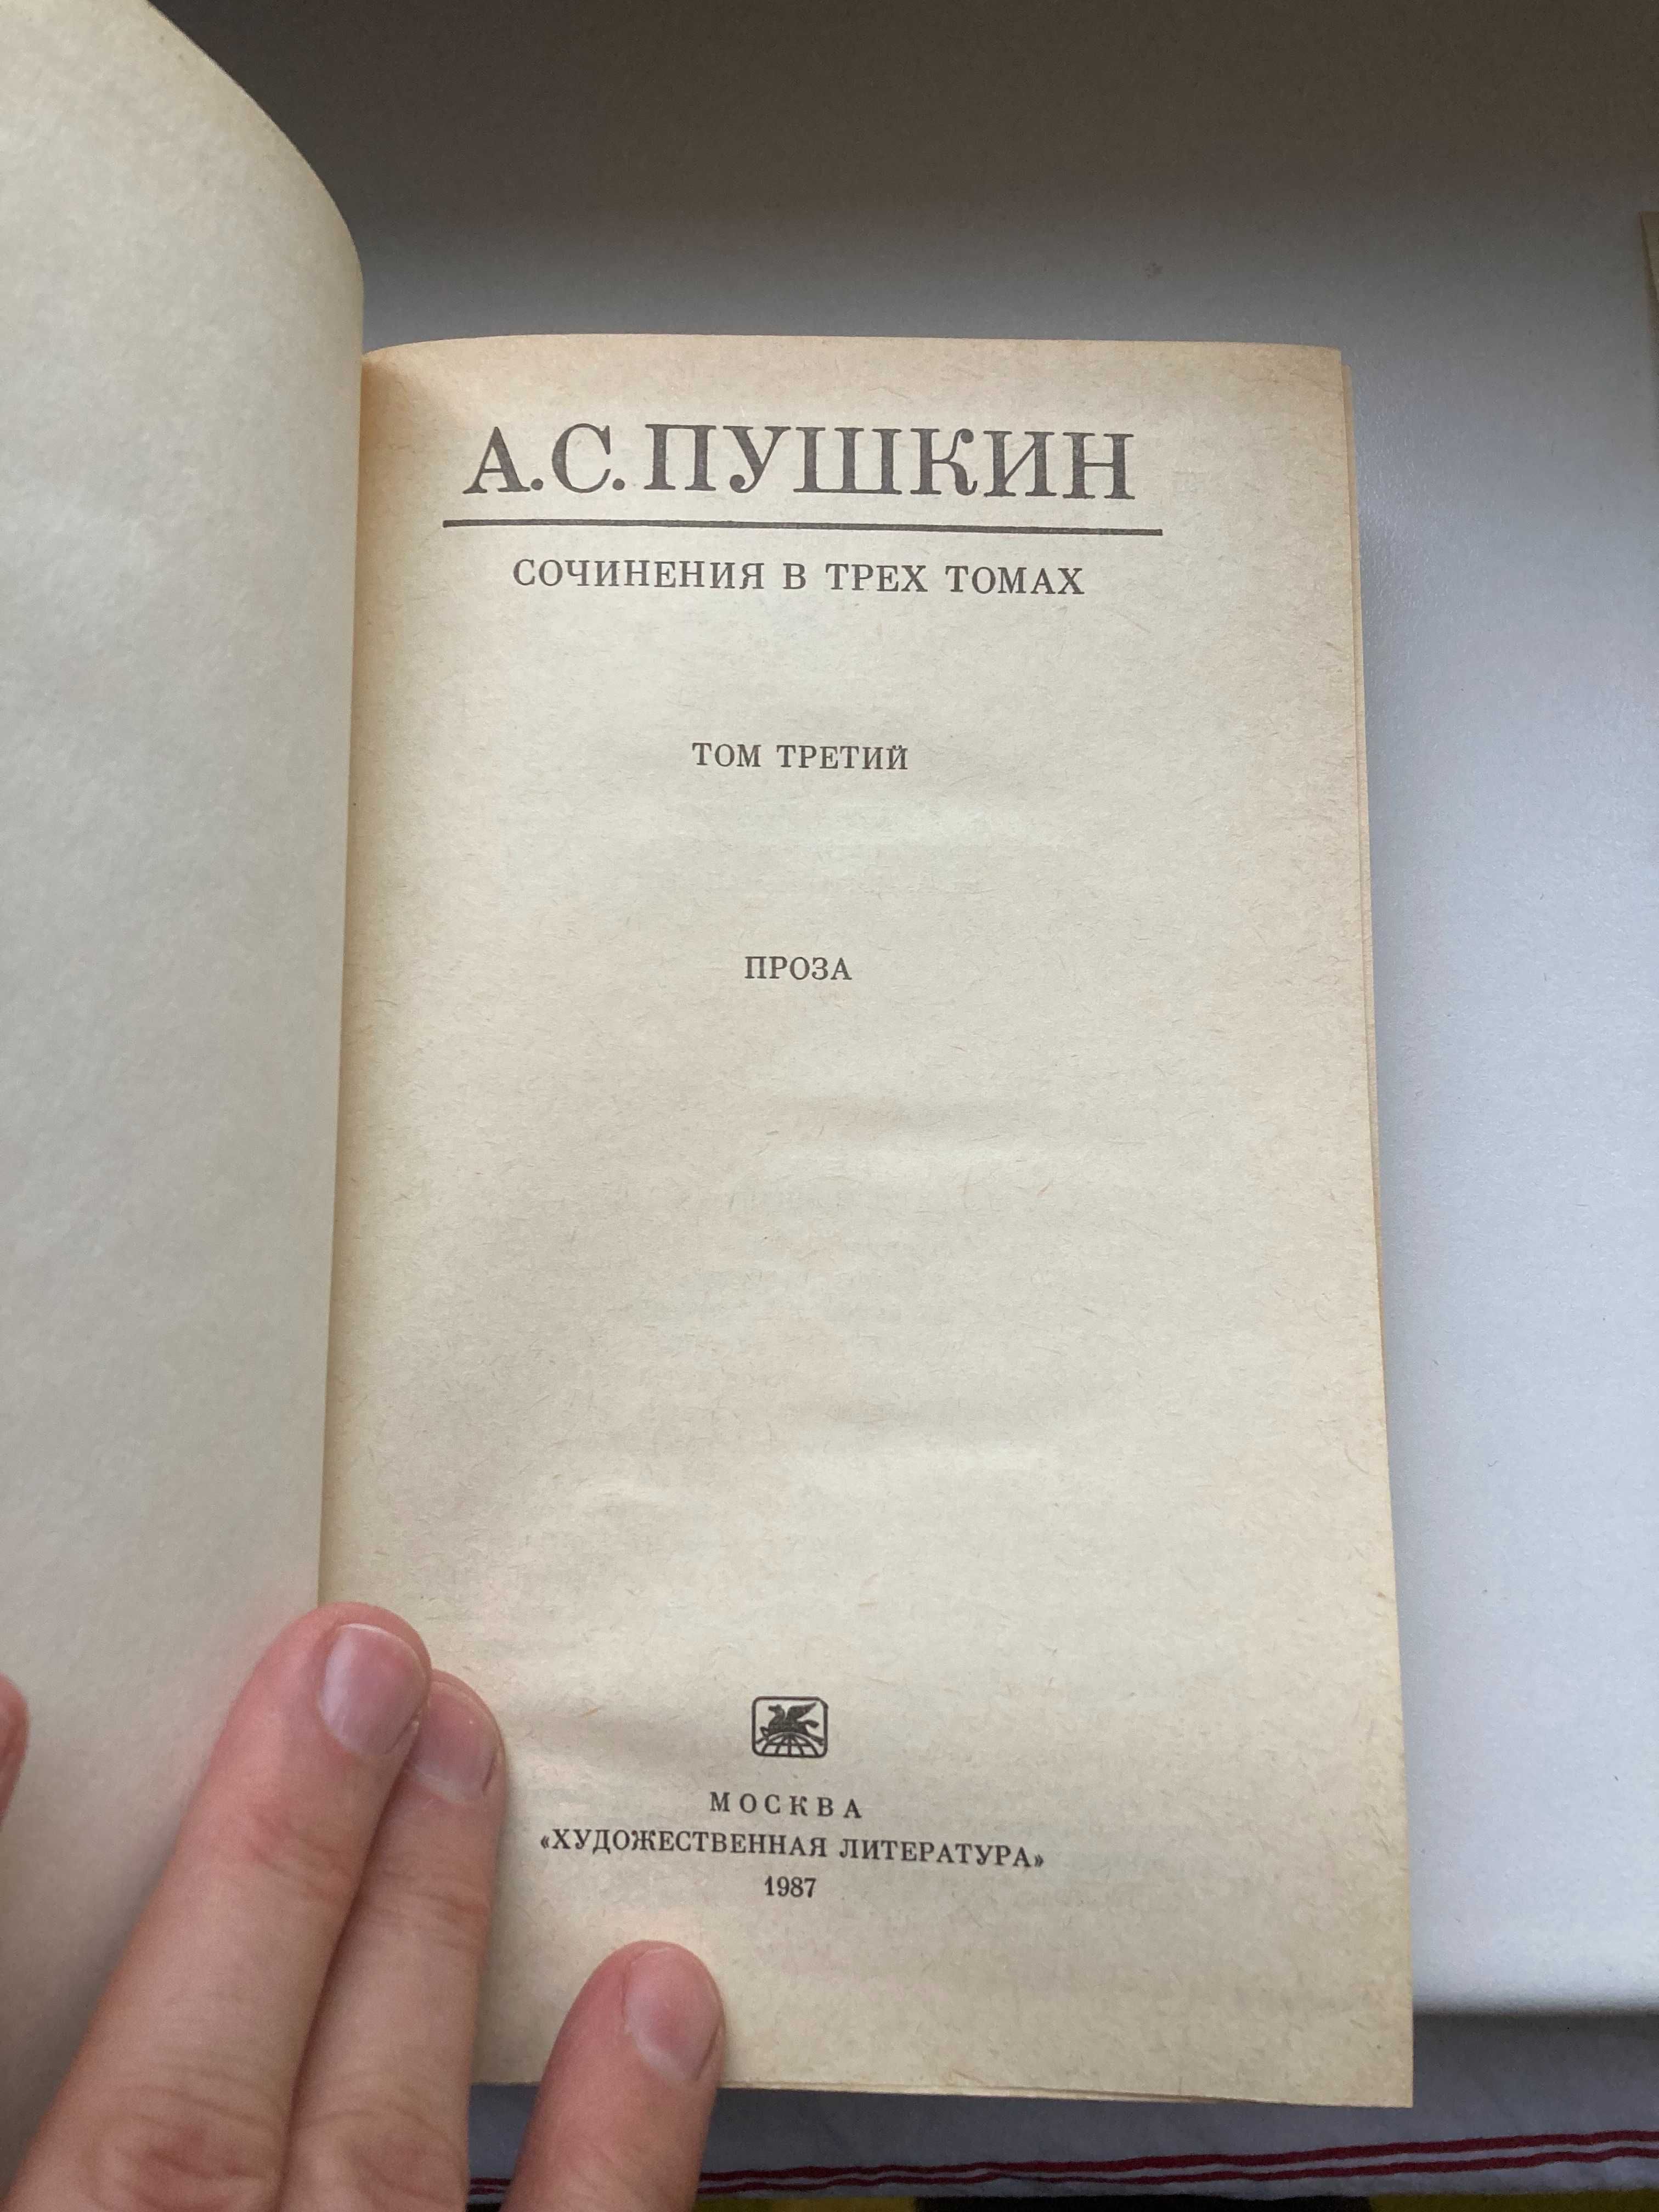 Полное собрание сочинений Пушкина в трех томах